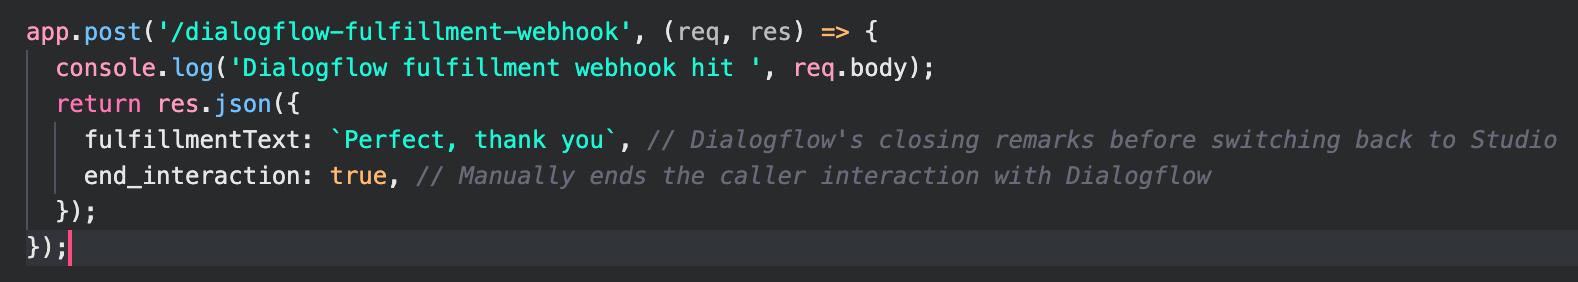 dialogflow code endpoint